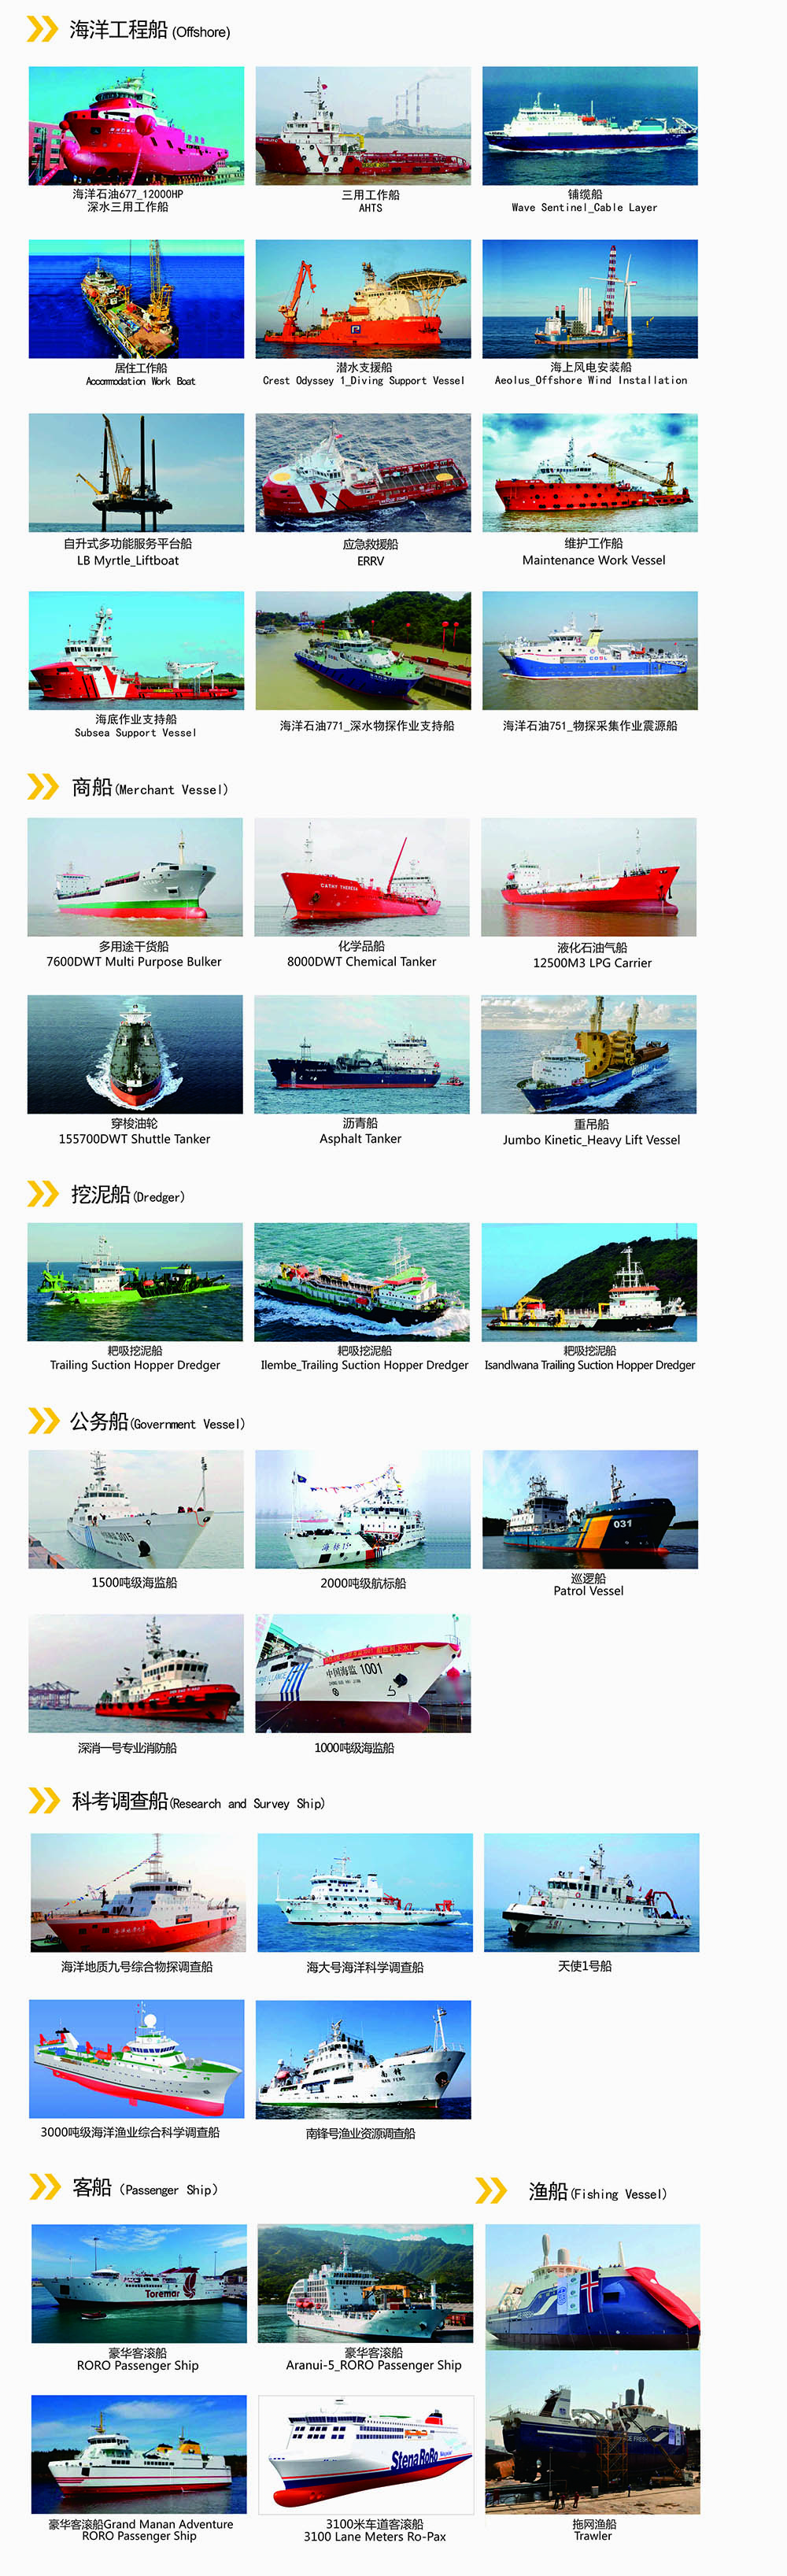 卡特彼勒海洋工程船/工作船/铺览船/支援船/救援船动力系统应用案例_CAT